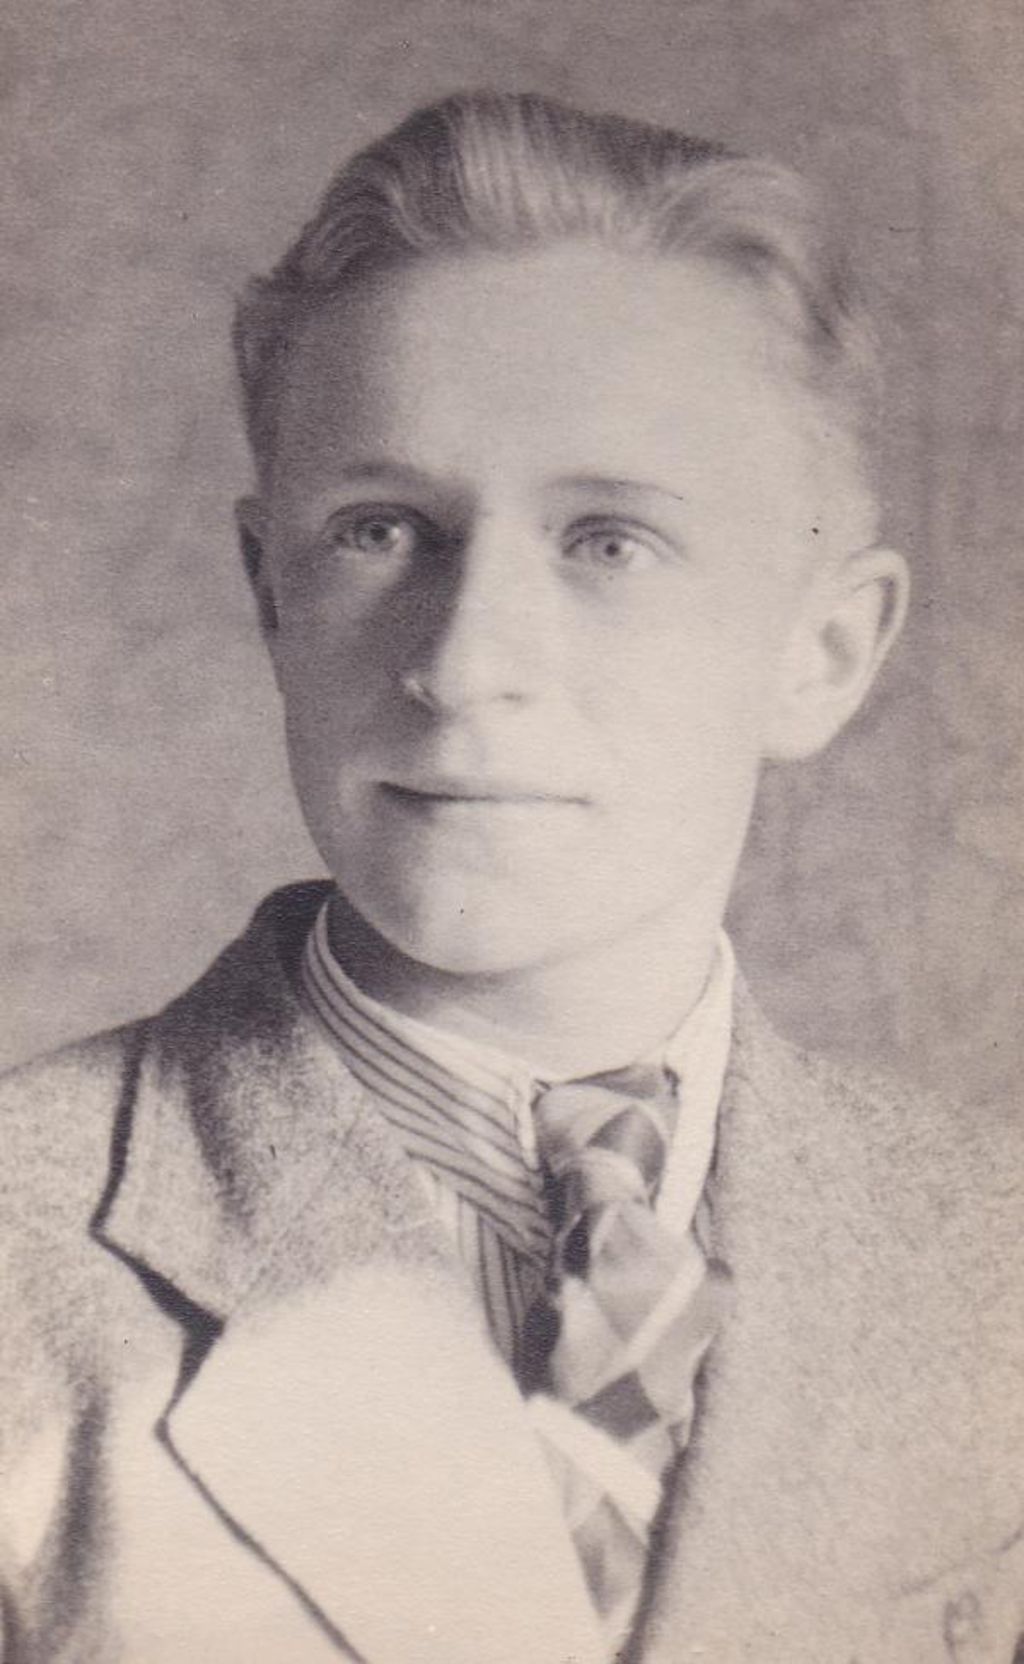 Alfred Müller